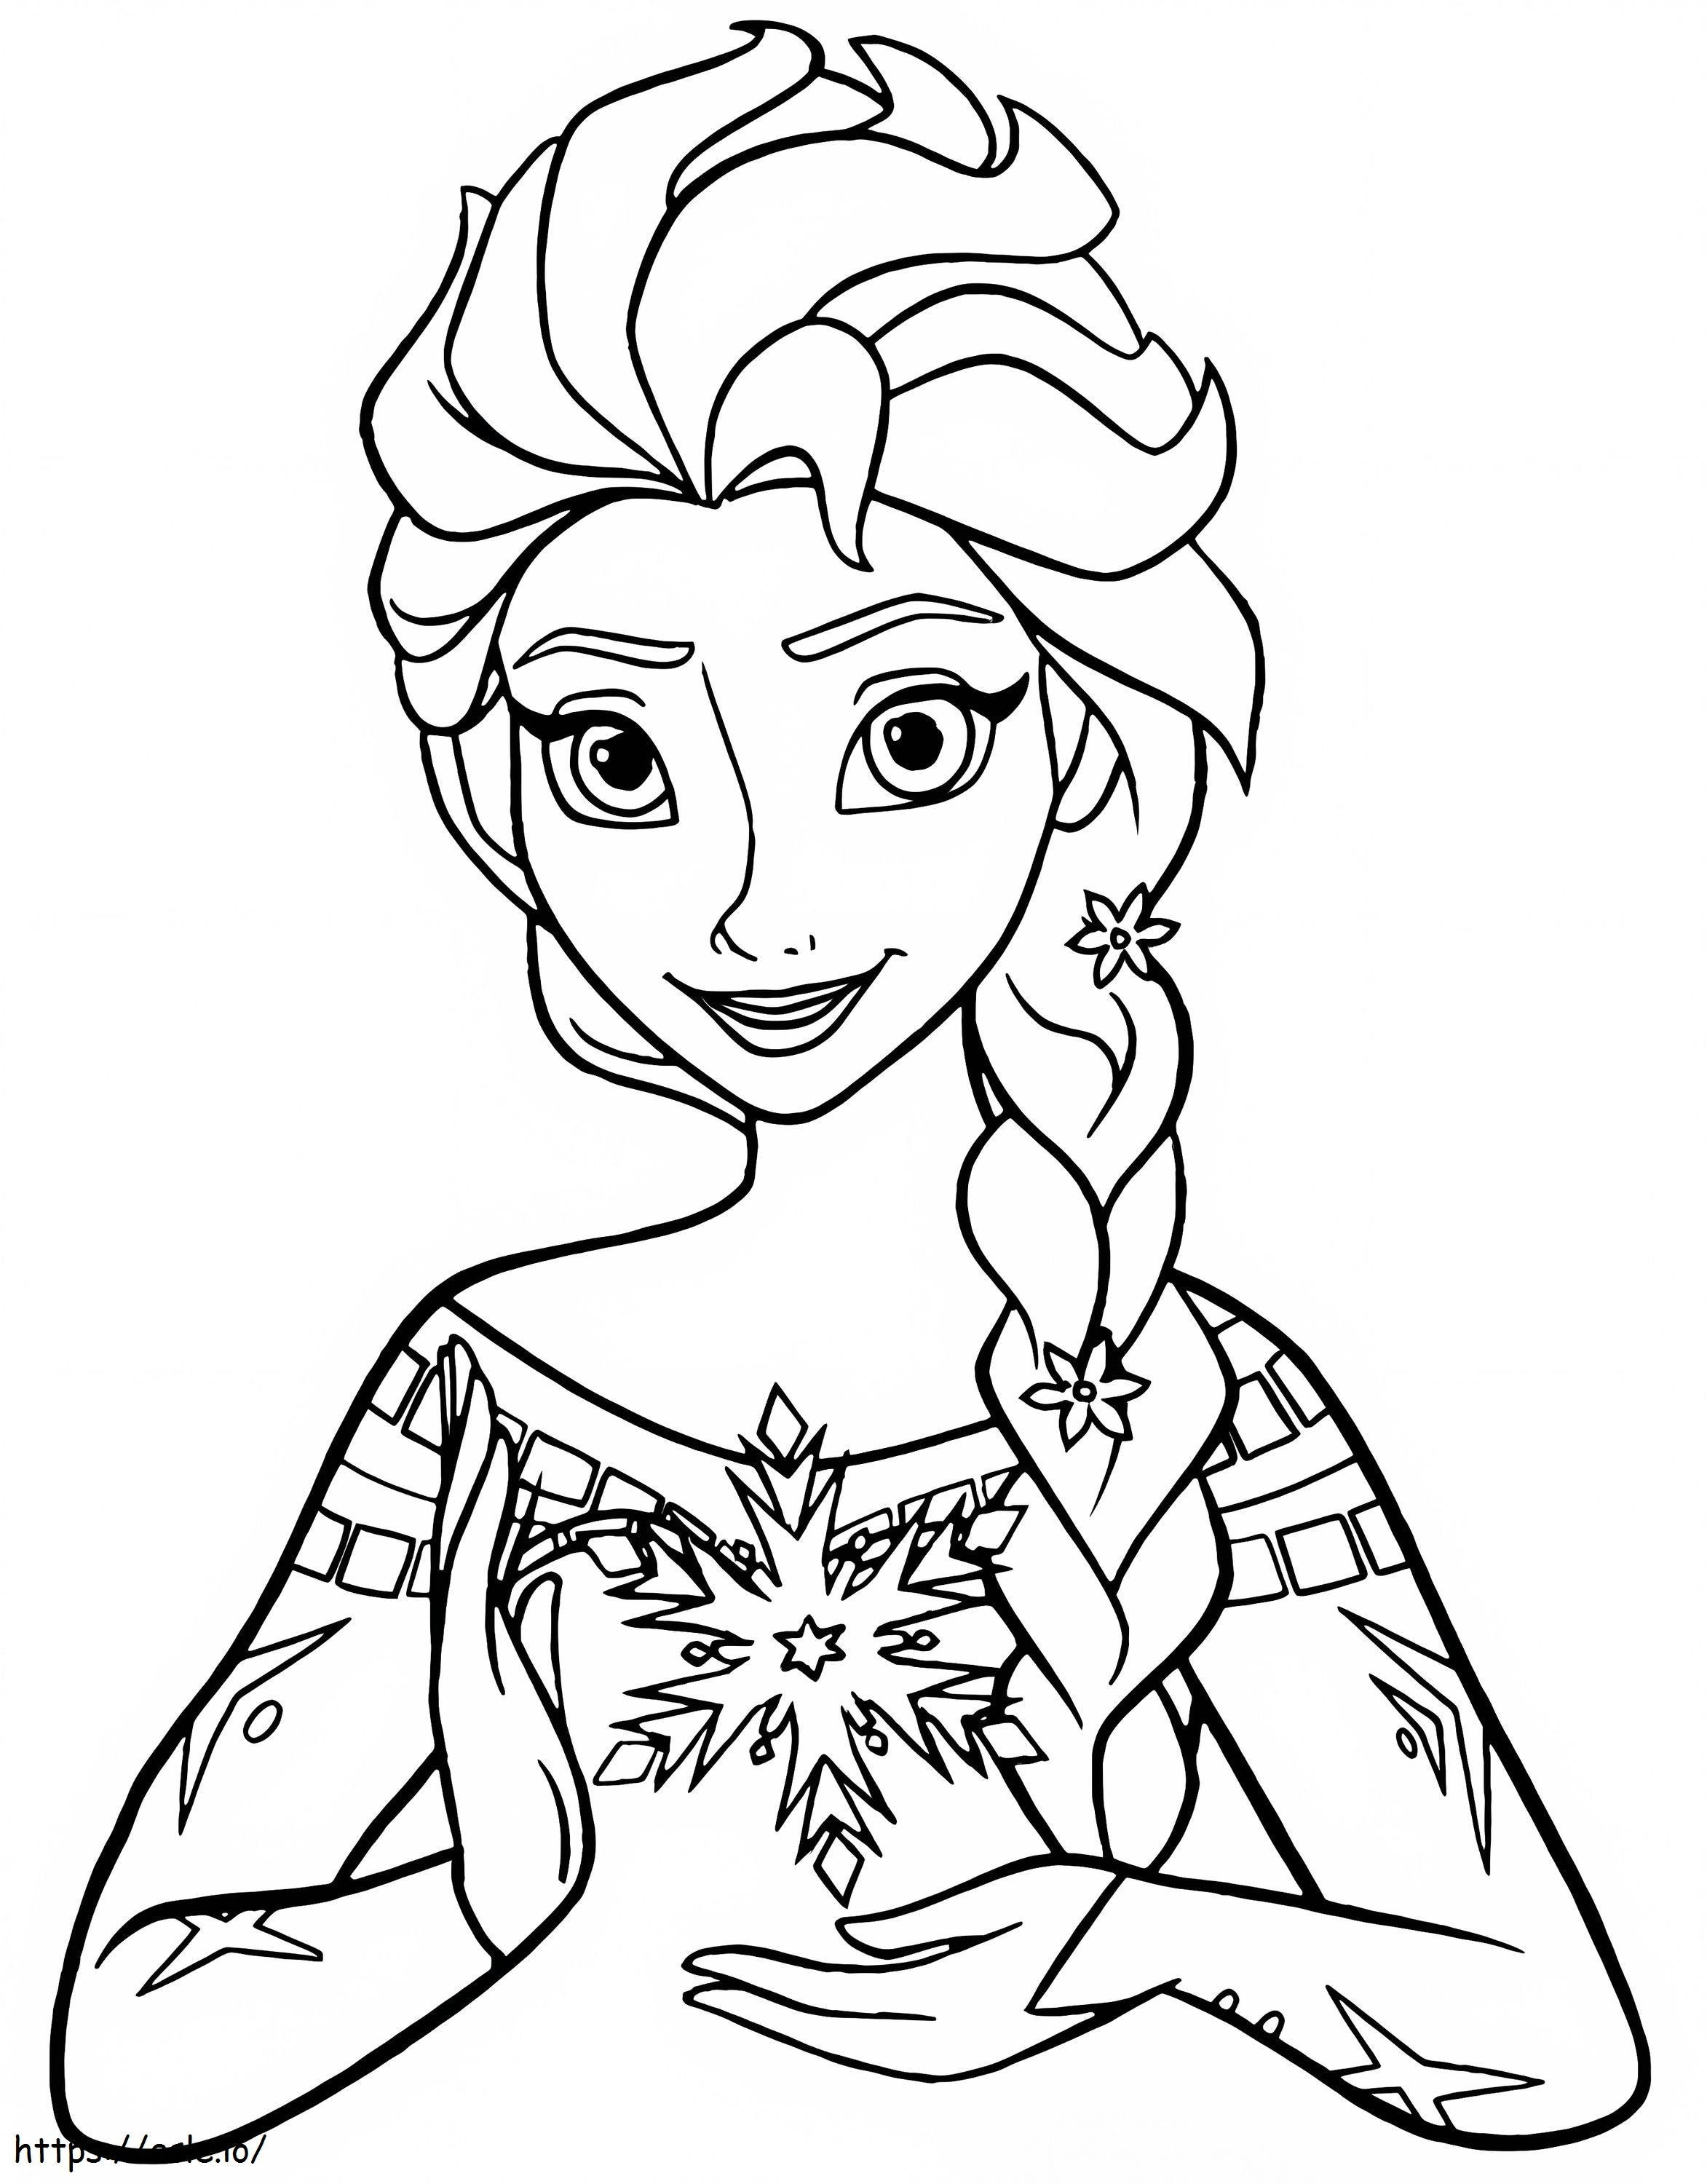 Elsa esta sonriendo para colorear